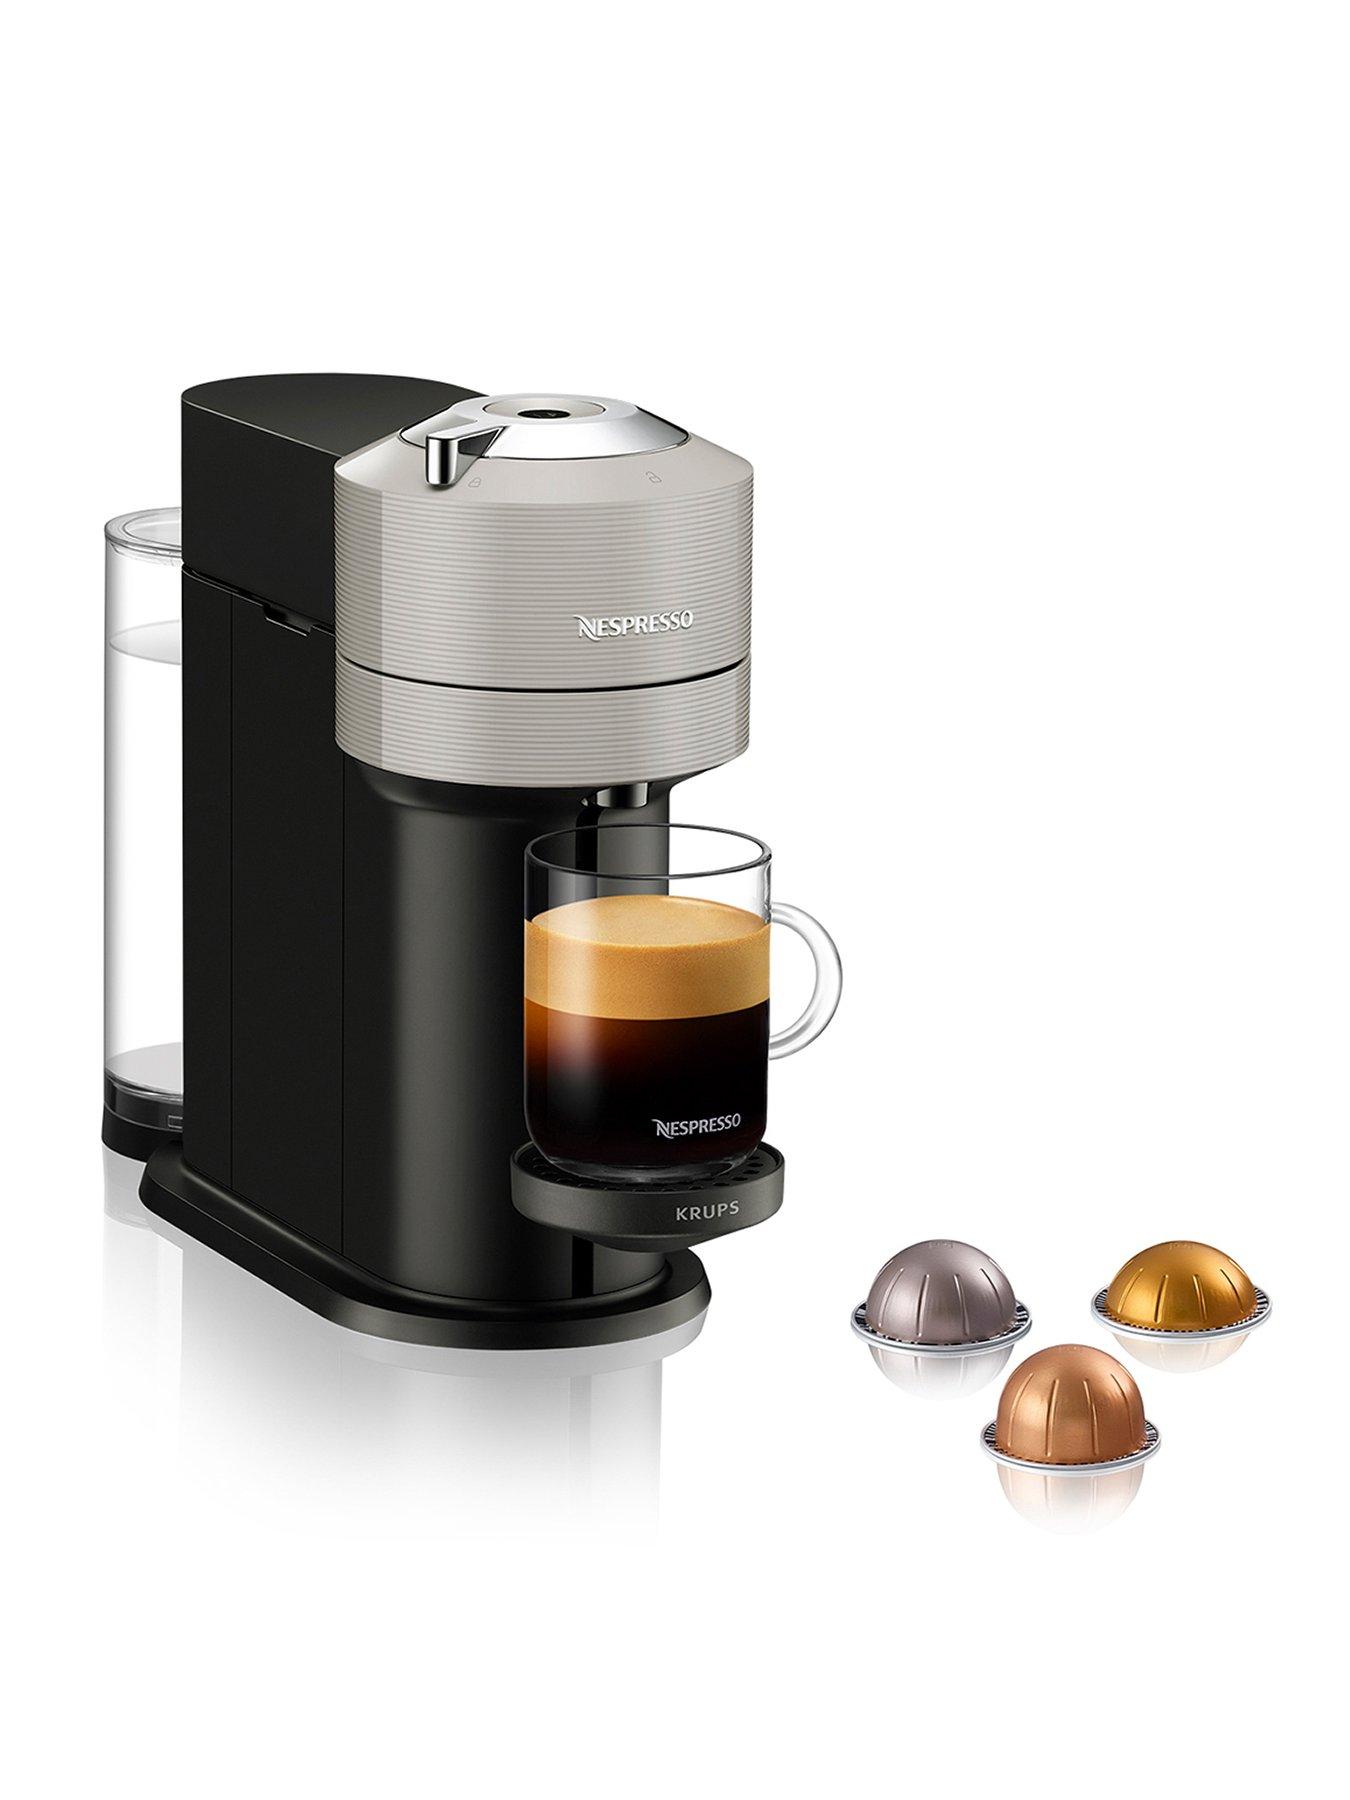 Discover the New Nespresso Vertuo POP - Your Perfect Caffeine Companion